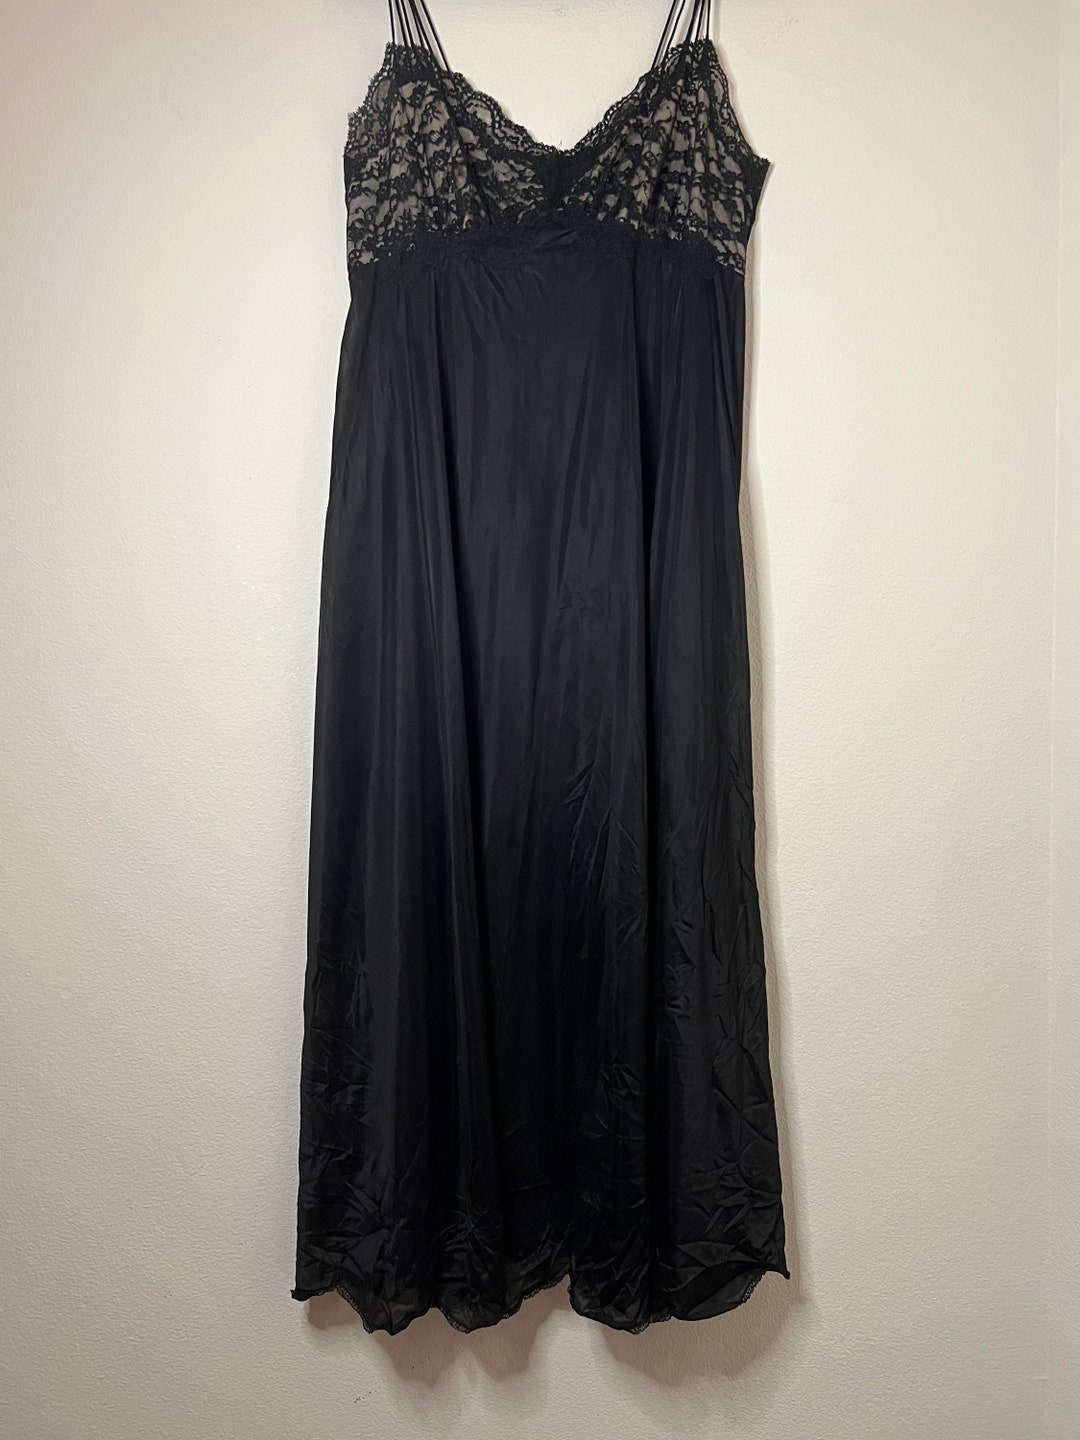 Vintage 1950's-1960's Long Floor Length Vanity Fair Negligee Nightgown ...